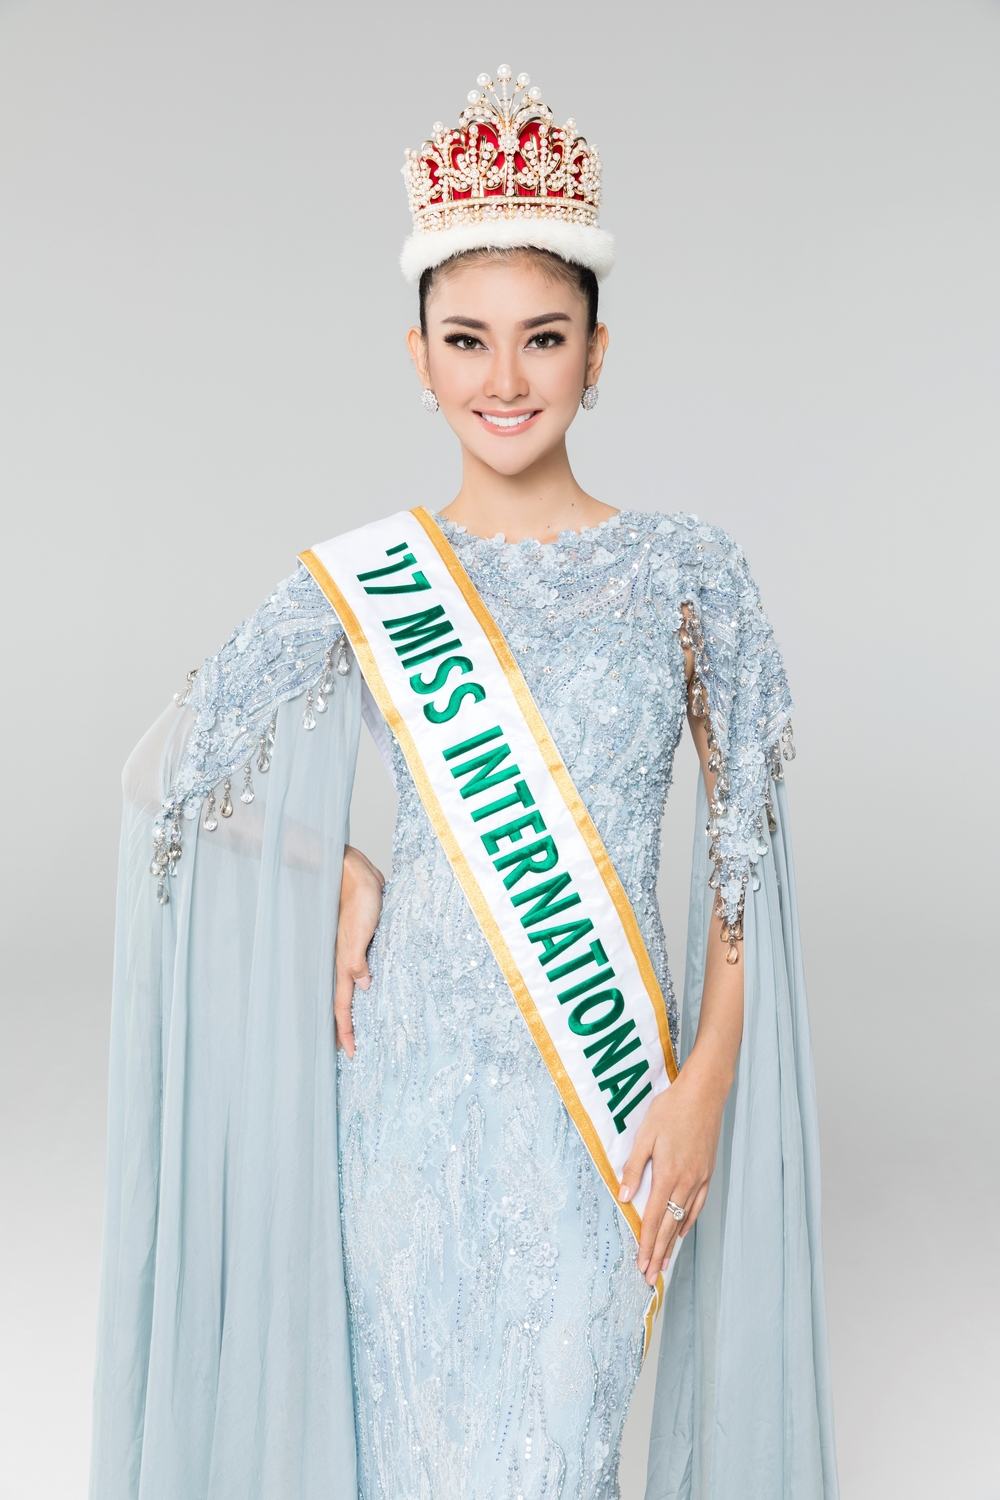 
Kevin Lilliana sẽ trao sash cho một trong 2 Á hậu HHVN, đại diện Việt Nam tham gia cuộc thi Miss International 2018 sẽ diễn ra vào tháng 11 tại Nhật Bản.